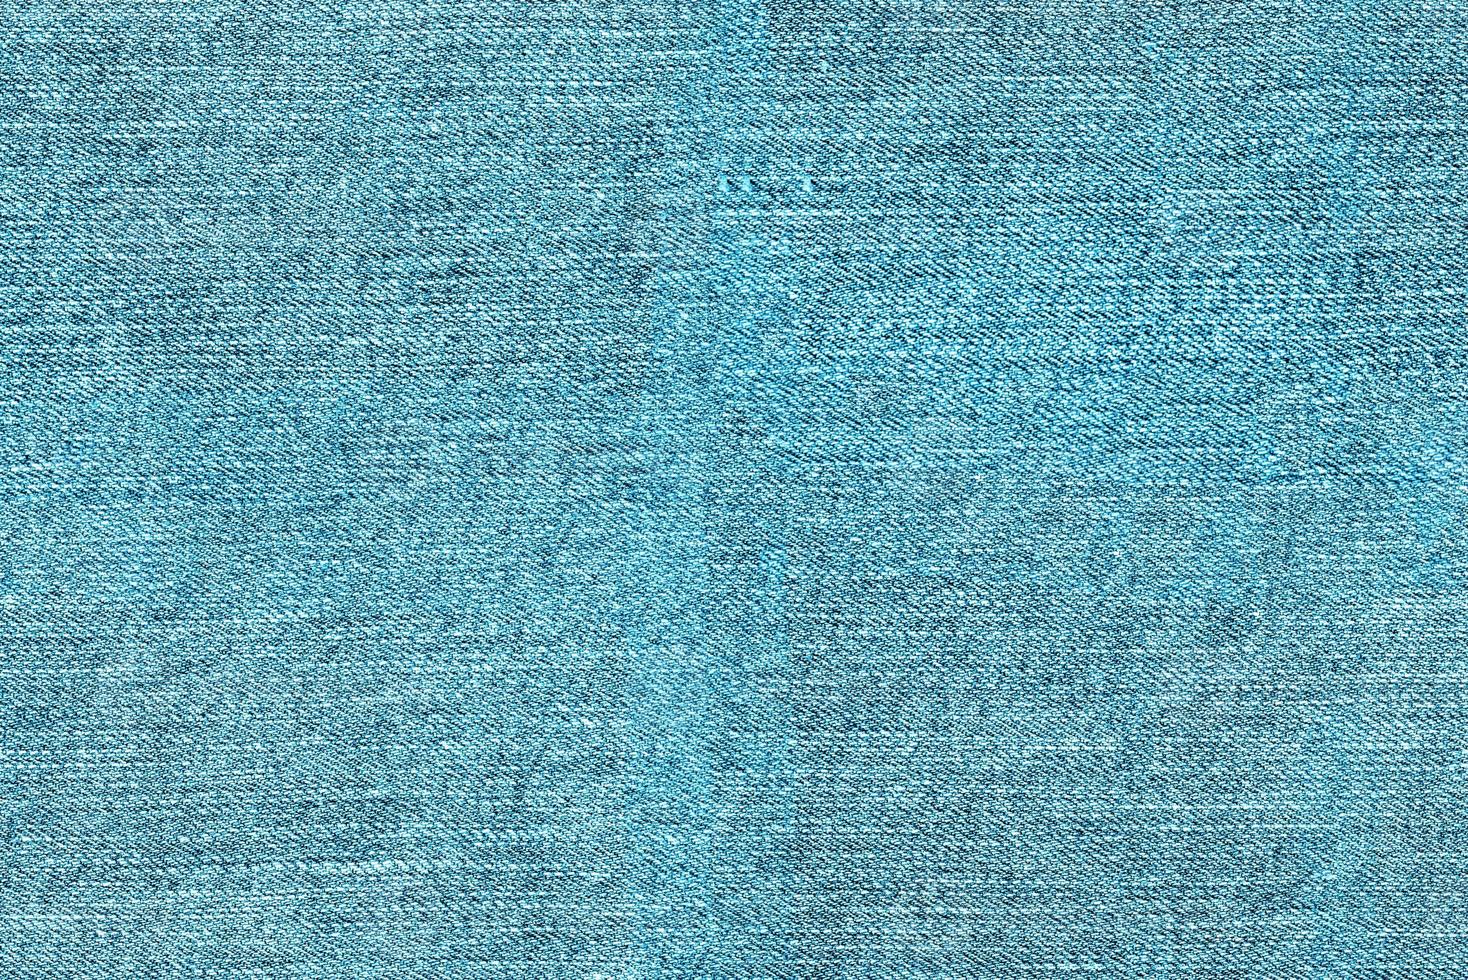 fond de texture transparente de tissu denim bleu clair photo